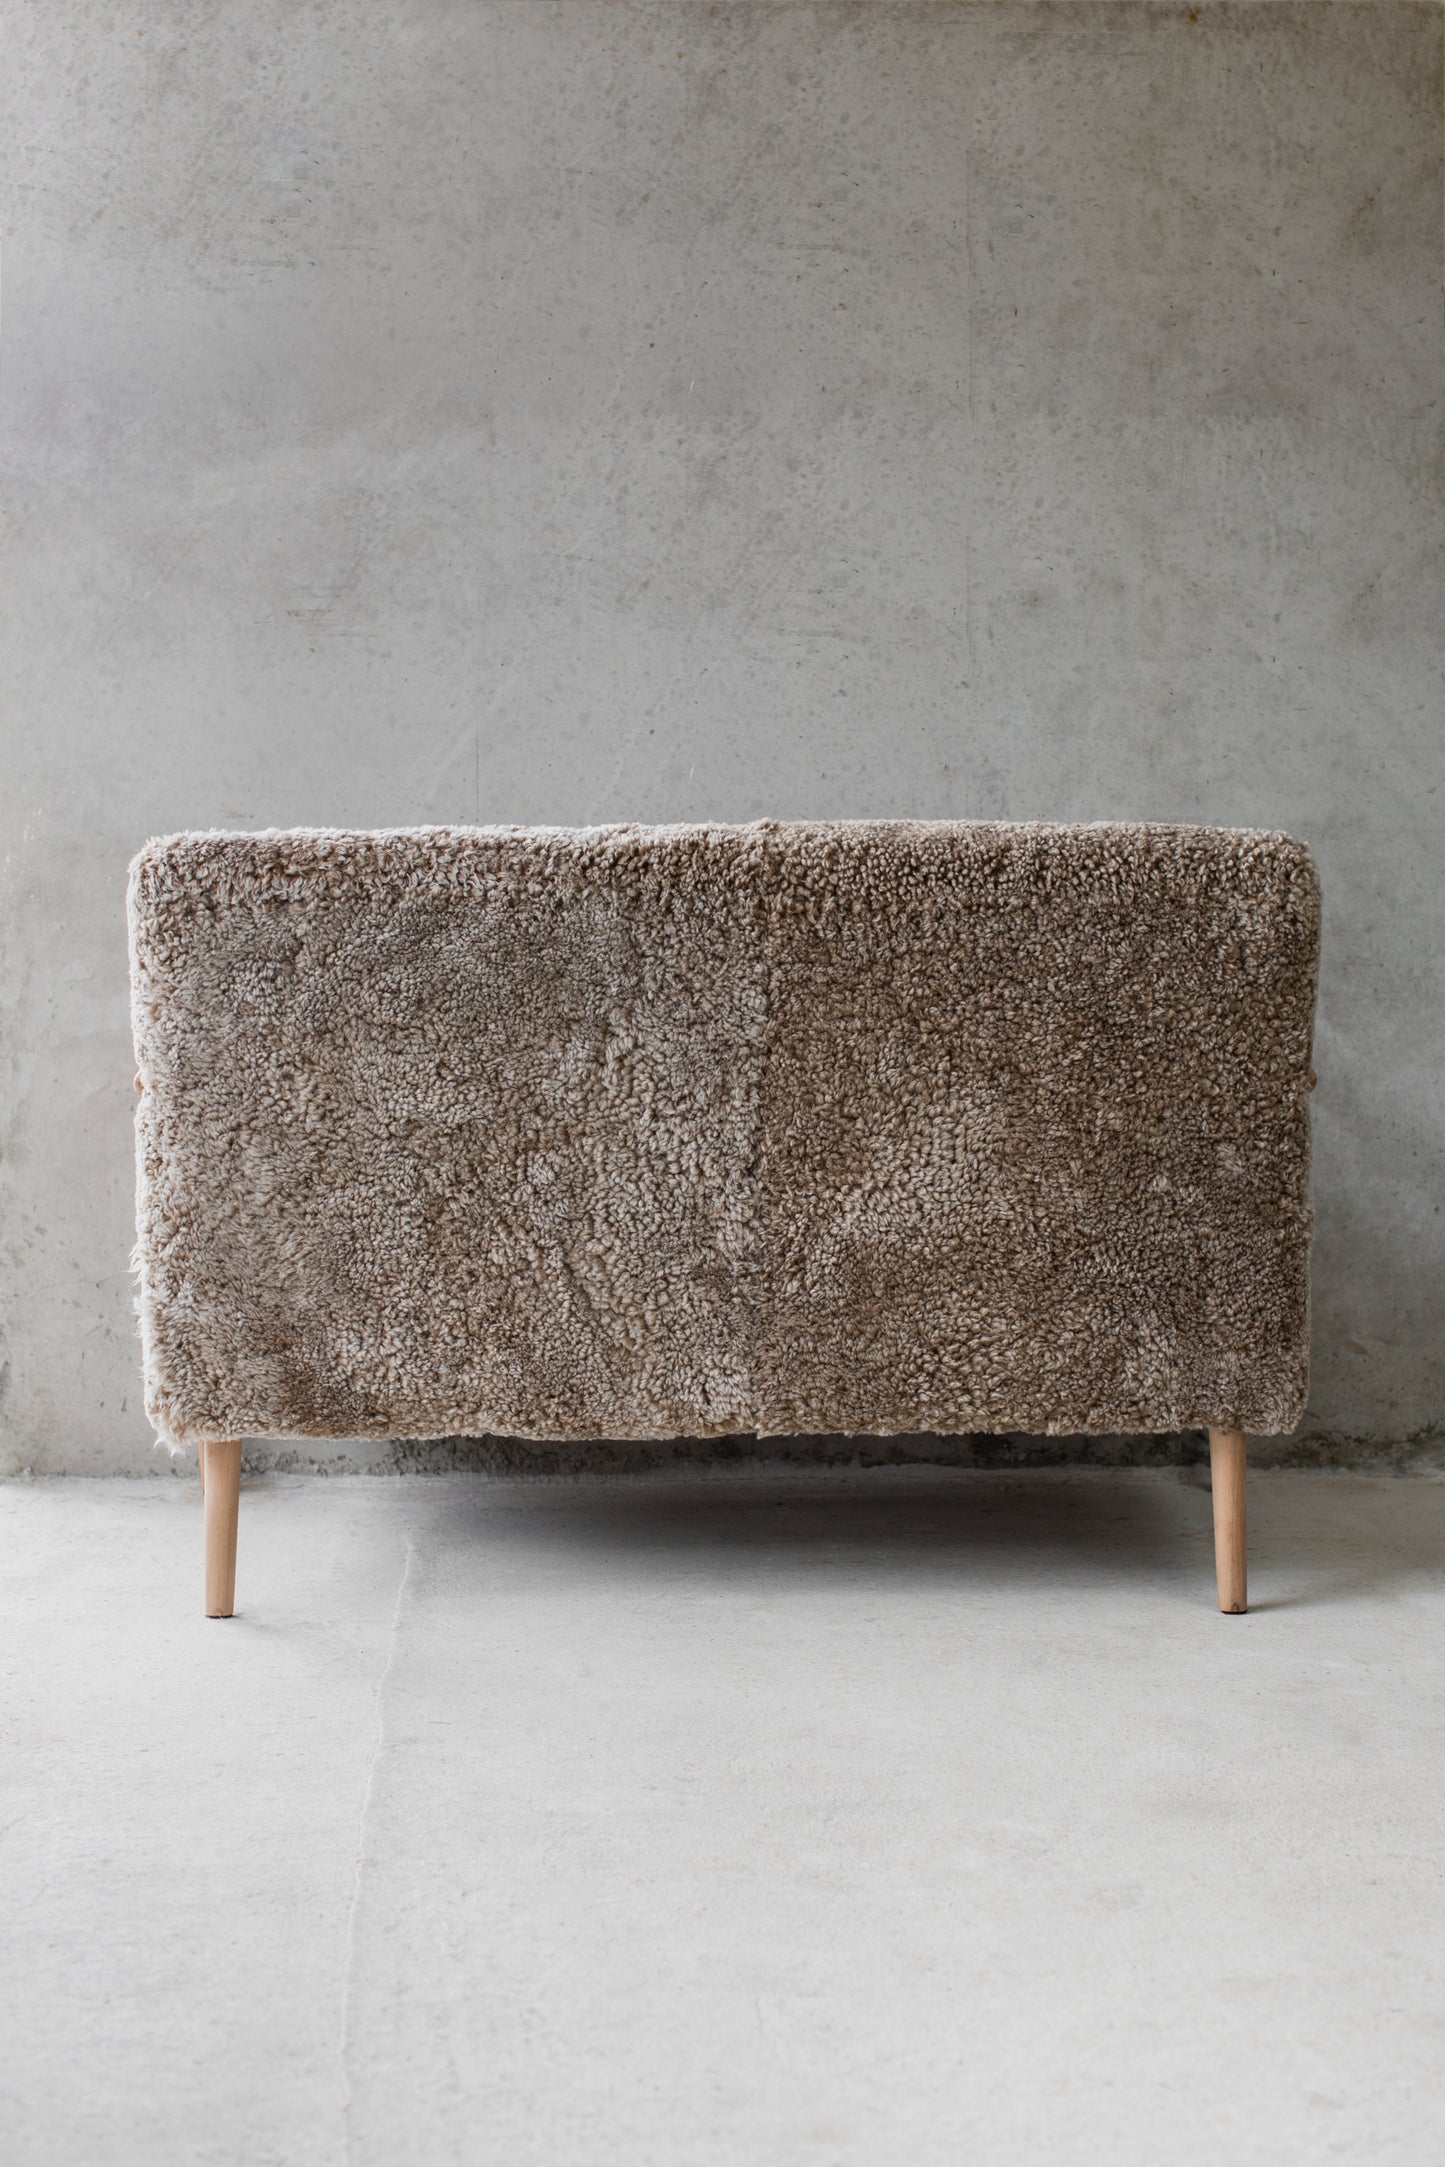 Sheepskin Sofa Standard